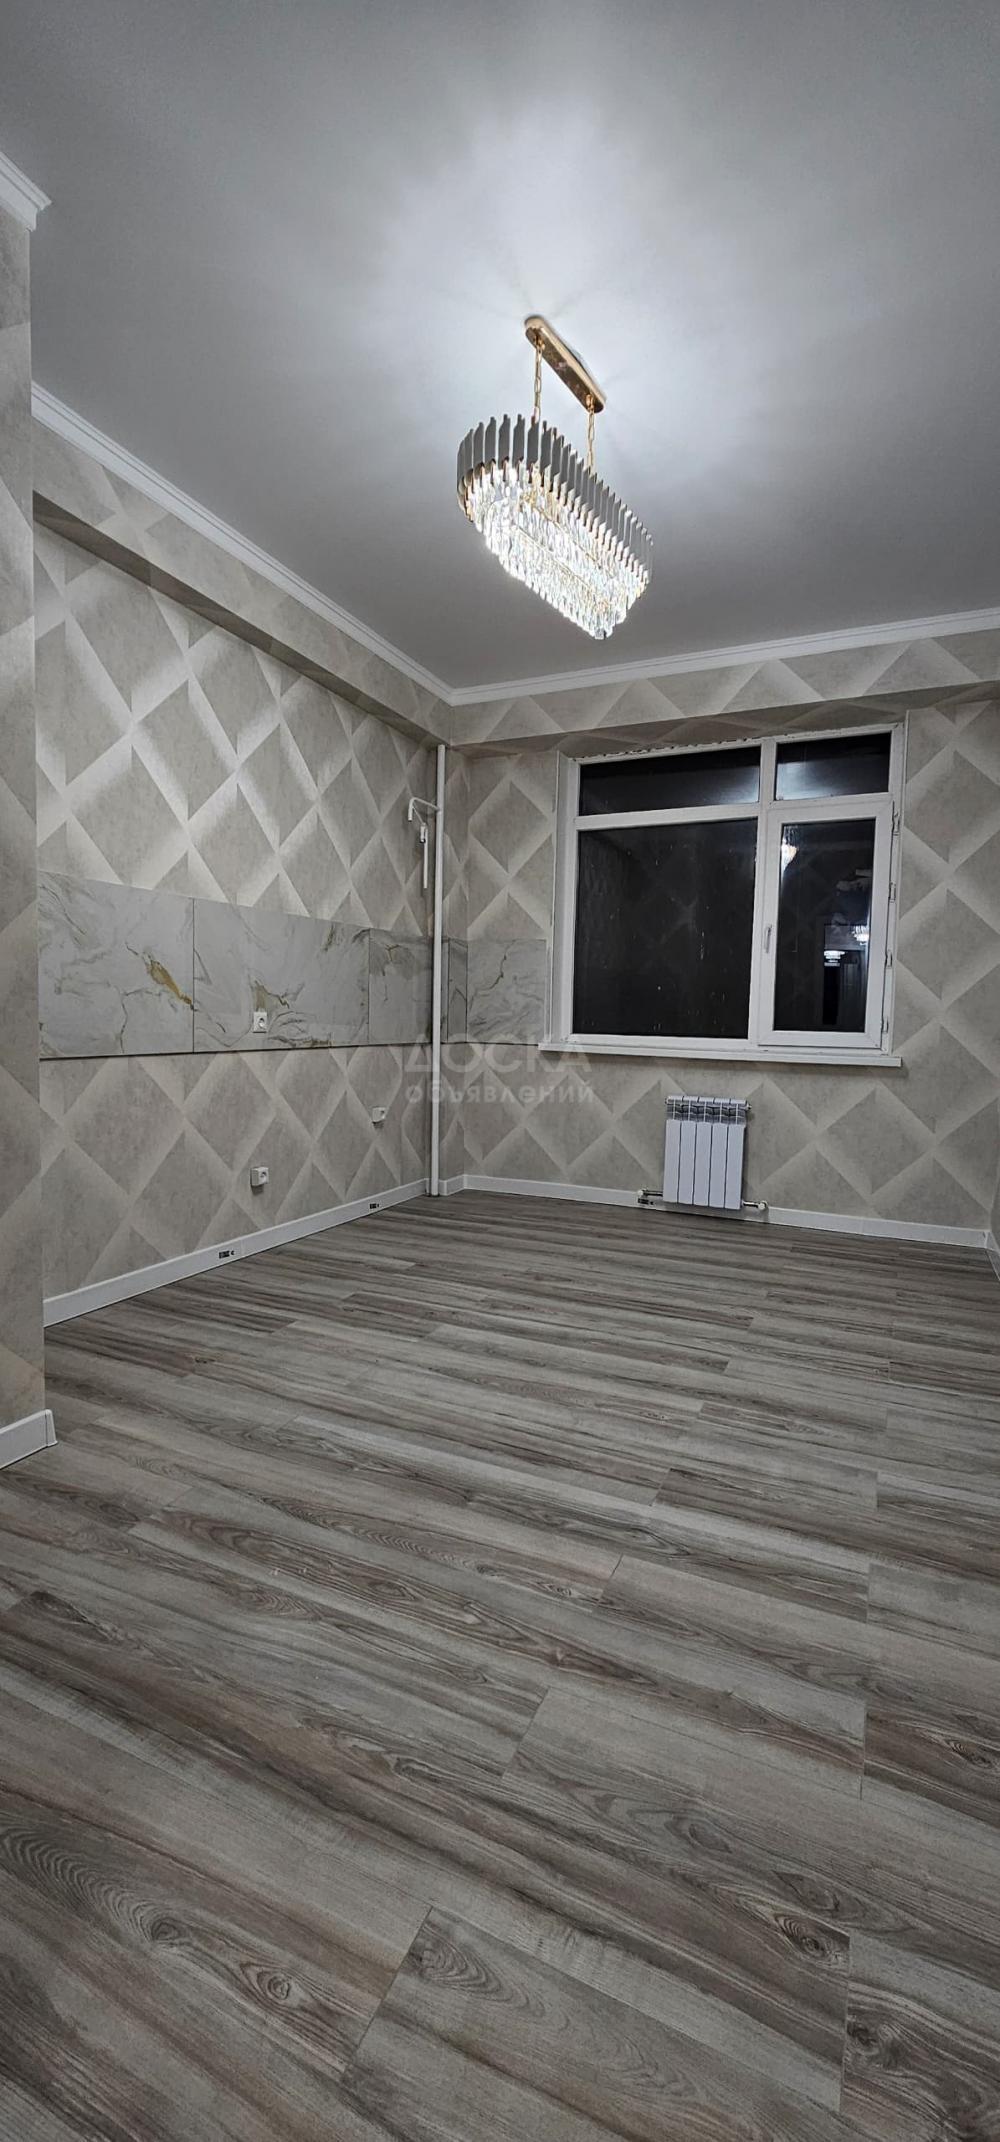 Продаю 3-комнатную квартиру, 85кв. м., этаж - 3/14, Анкара/Чокана Валиханова, 95000$.